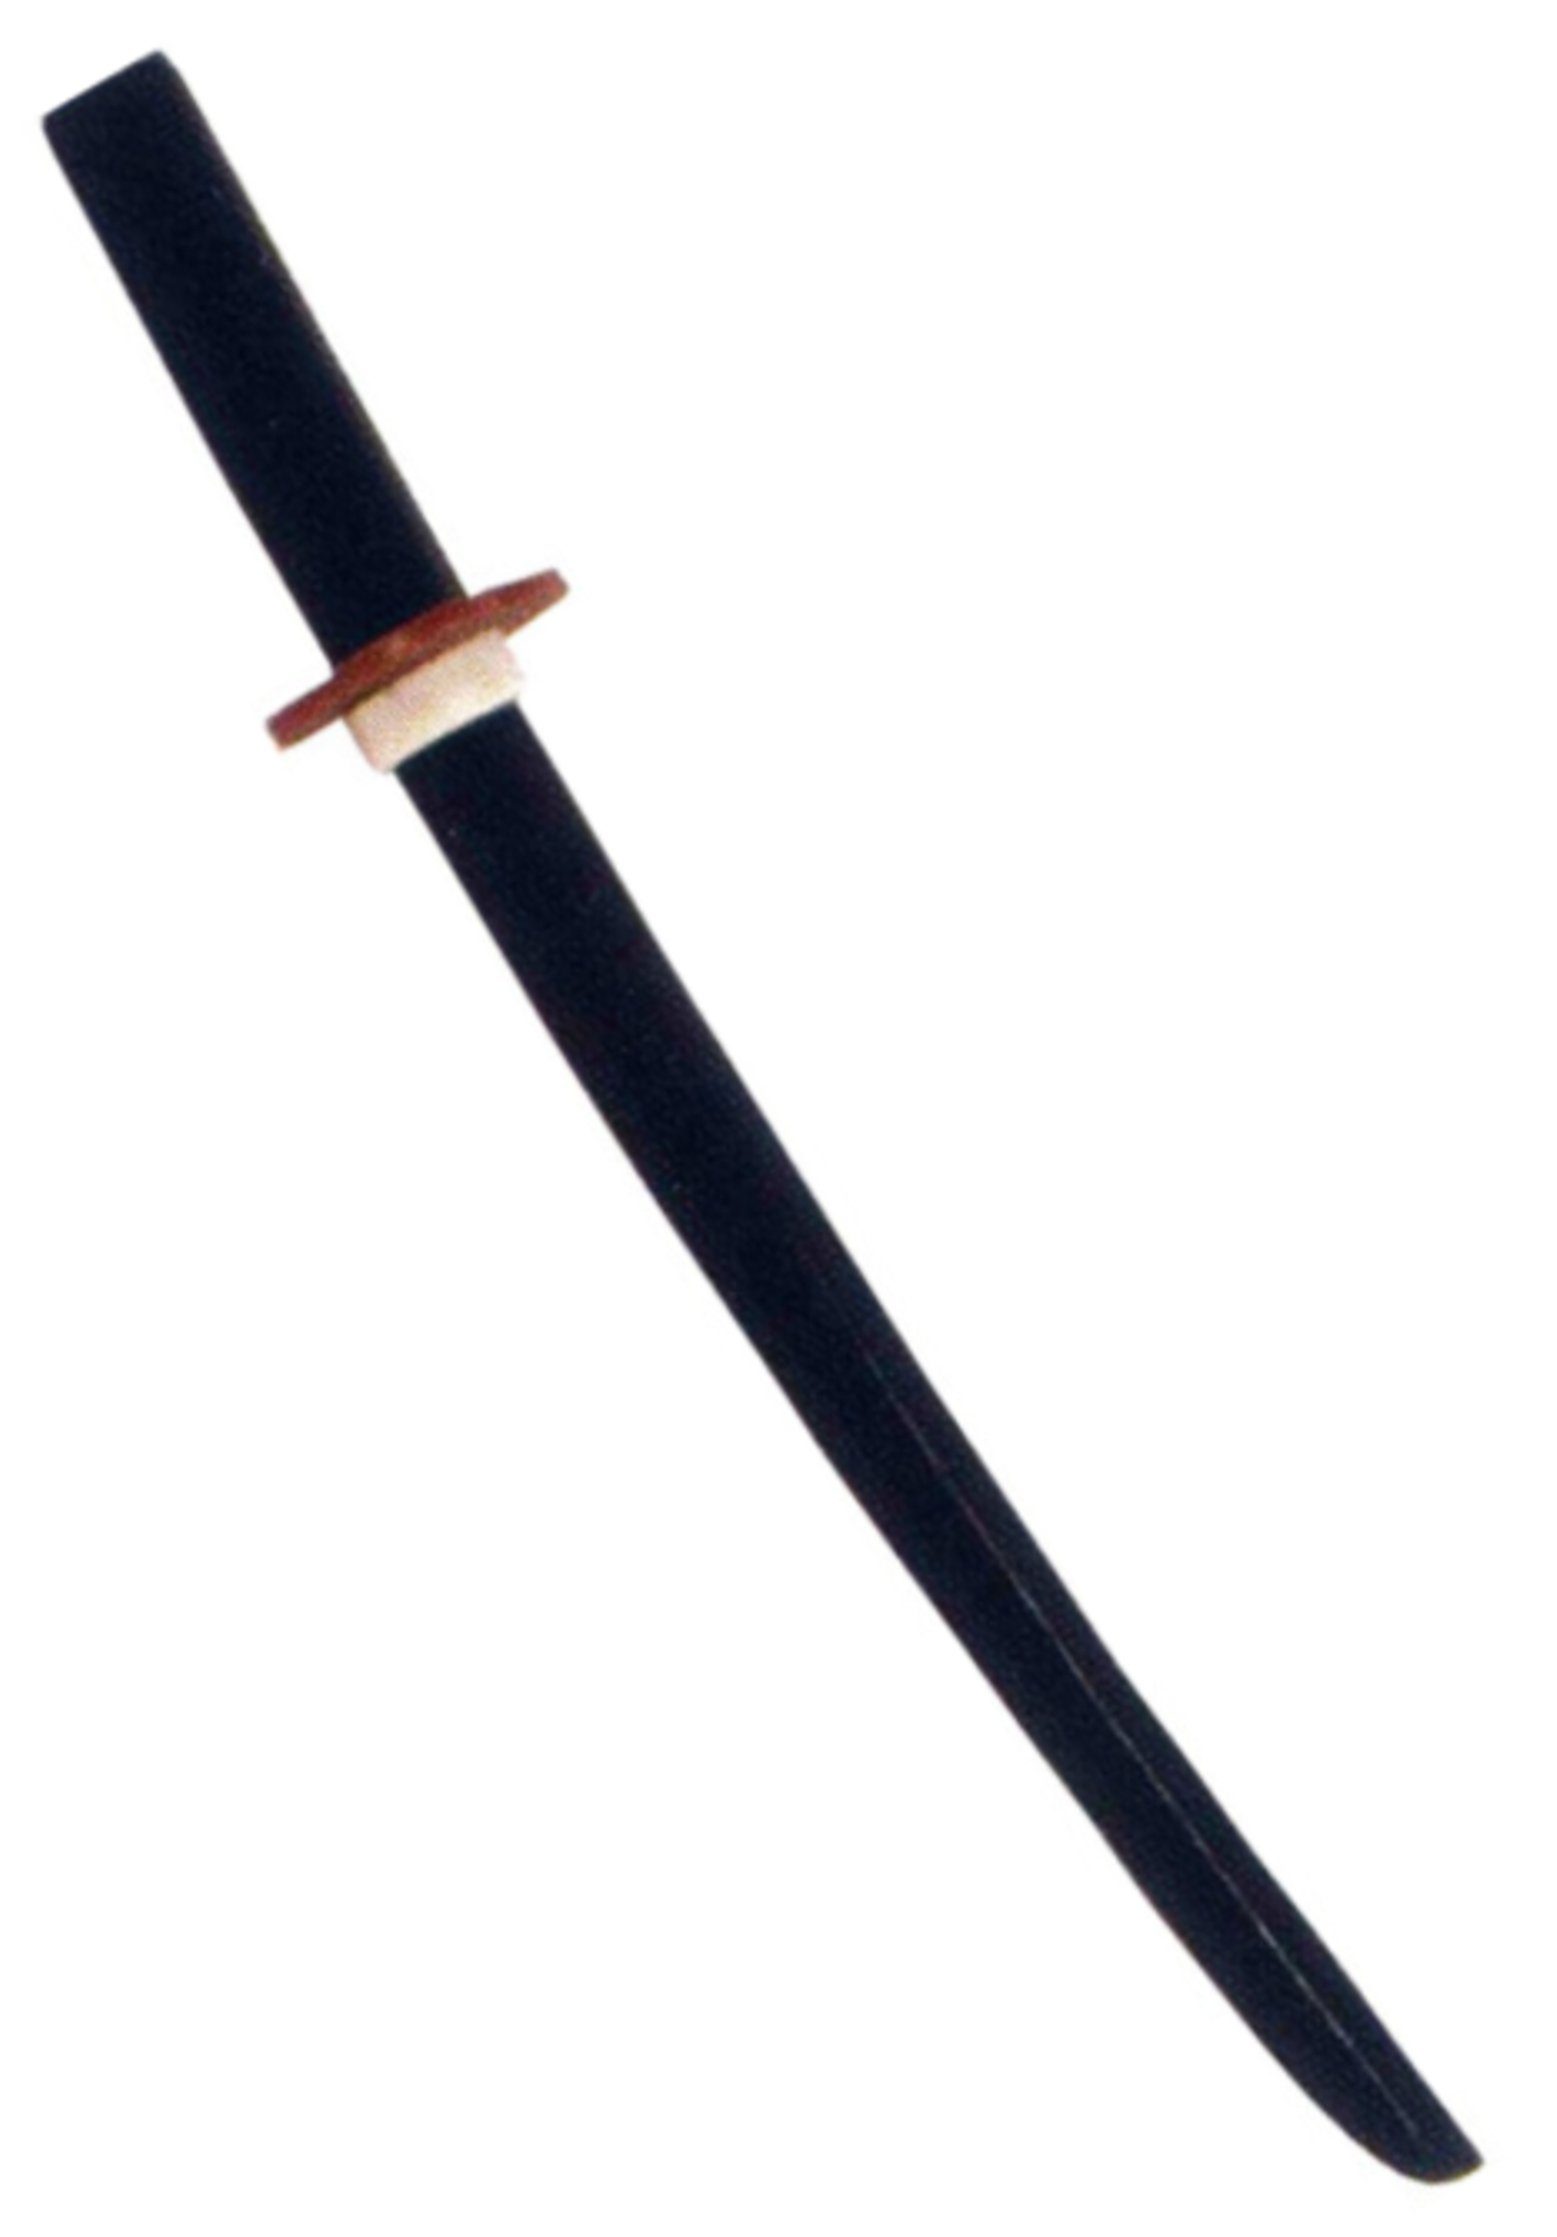 BAY-Sports Holzschwert Shoto Bokken Katana Eiche schwarz Holz Aikido Training Schwert Samurai (1 Stück), 56 cm, inkl. Tsuba, Echtholz, Kurzschwert, Trainingsschwert Attrappe